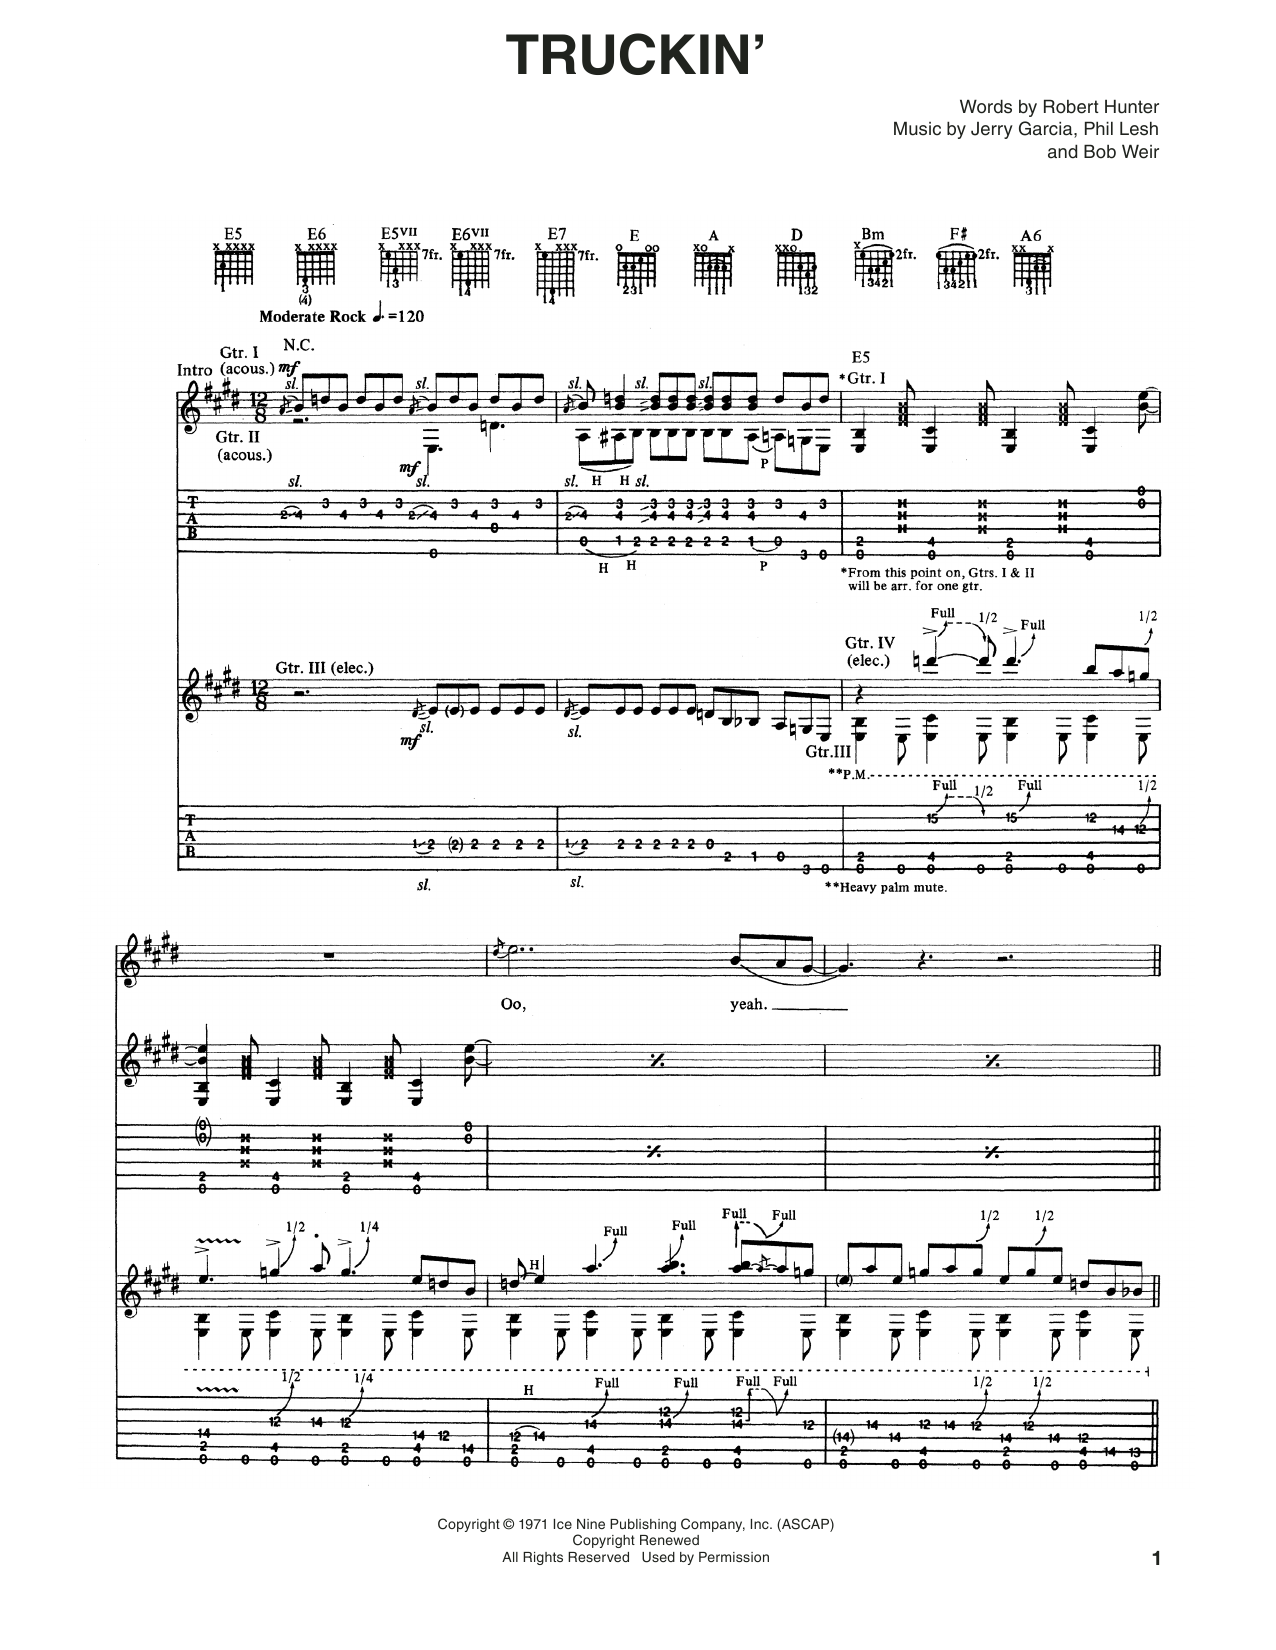 Grateful Dead Truckin' Sheet Music Notes & Chords for Ukulele - Download or Print PDF